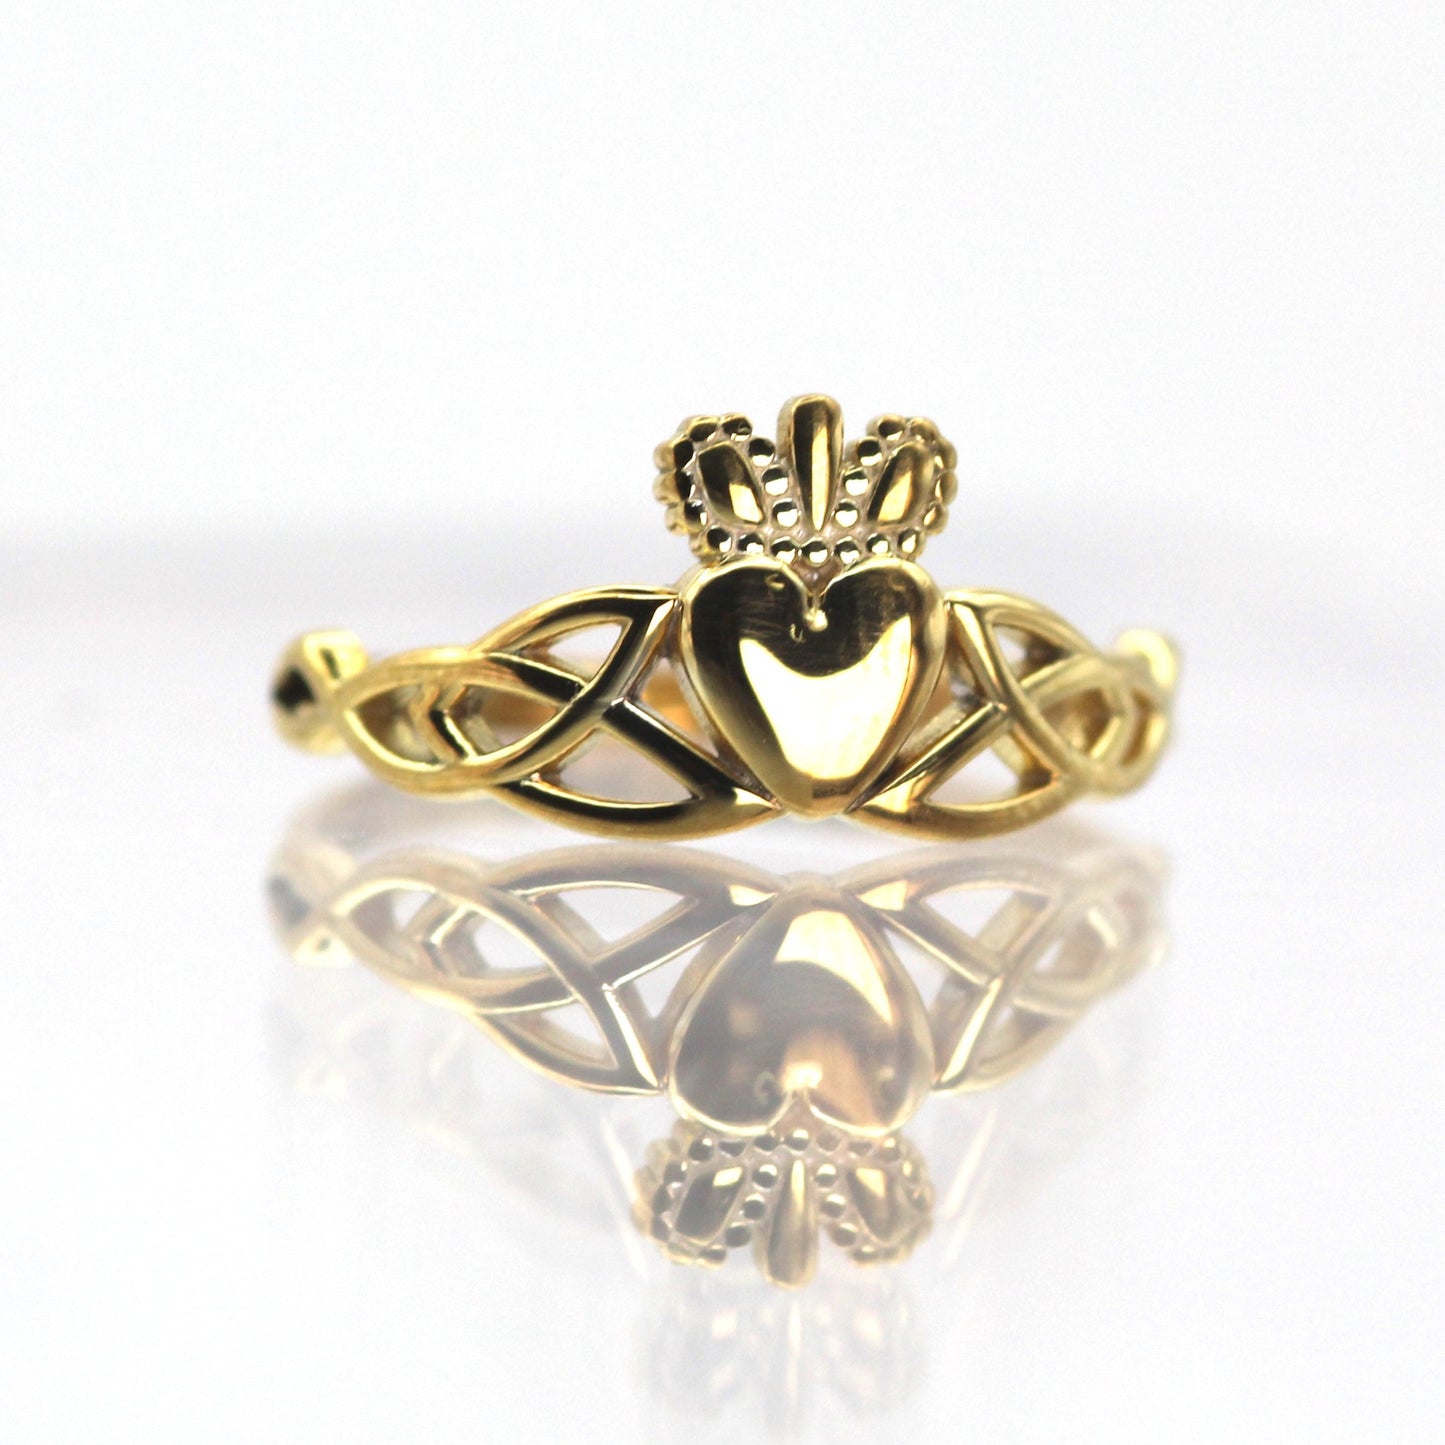 14k Irish Claddagh Gold Ring